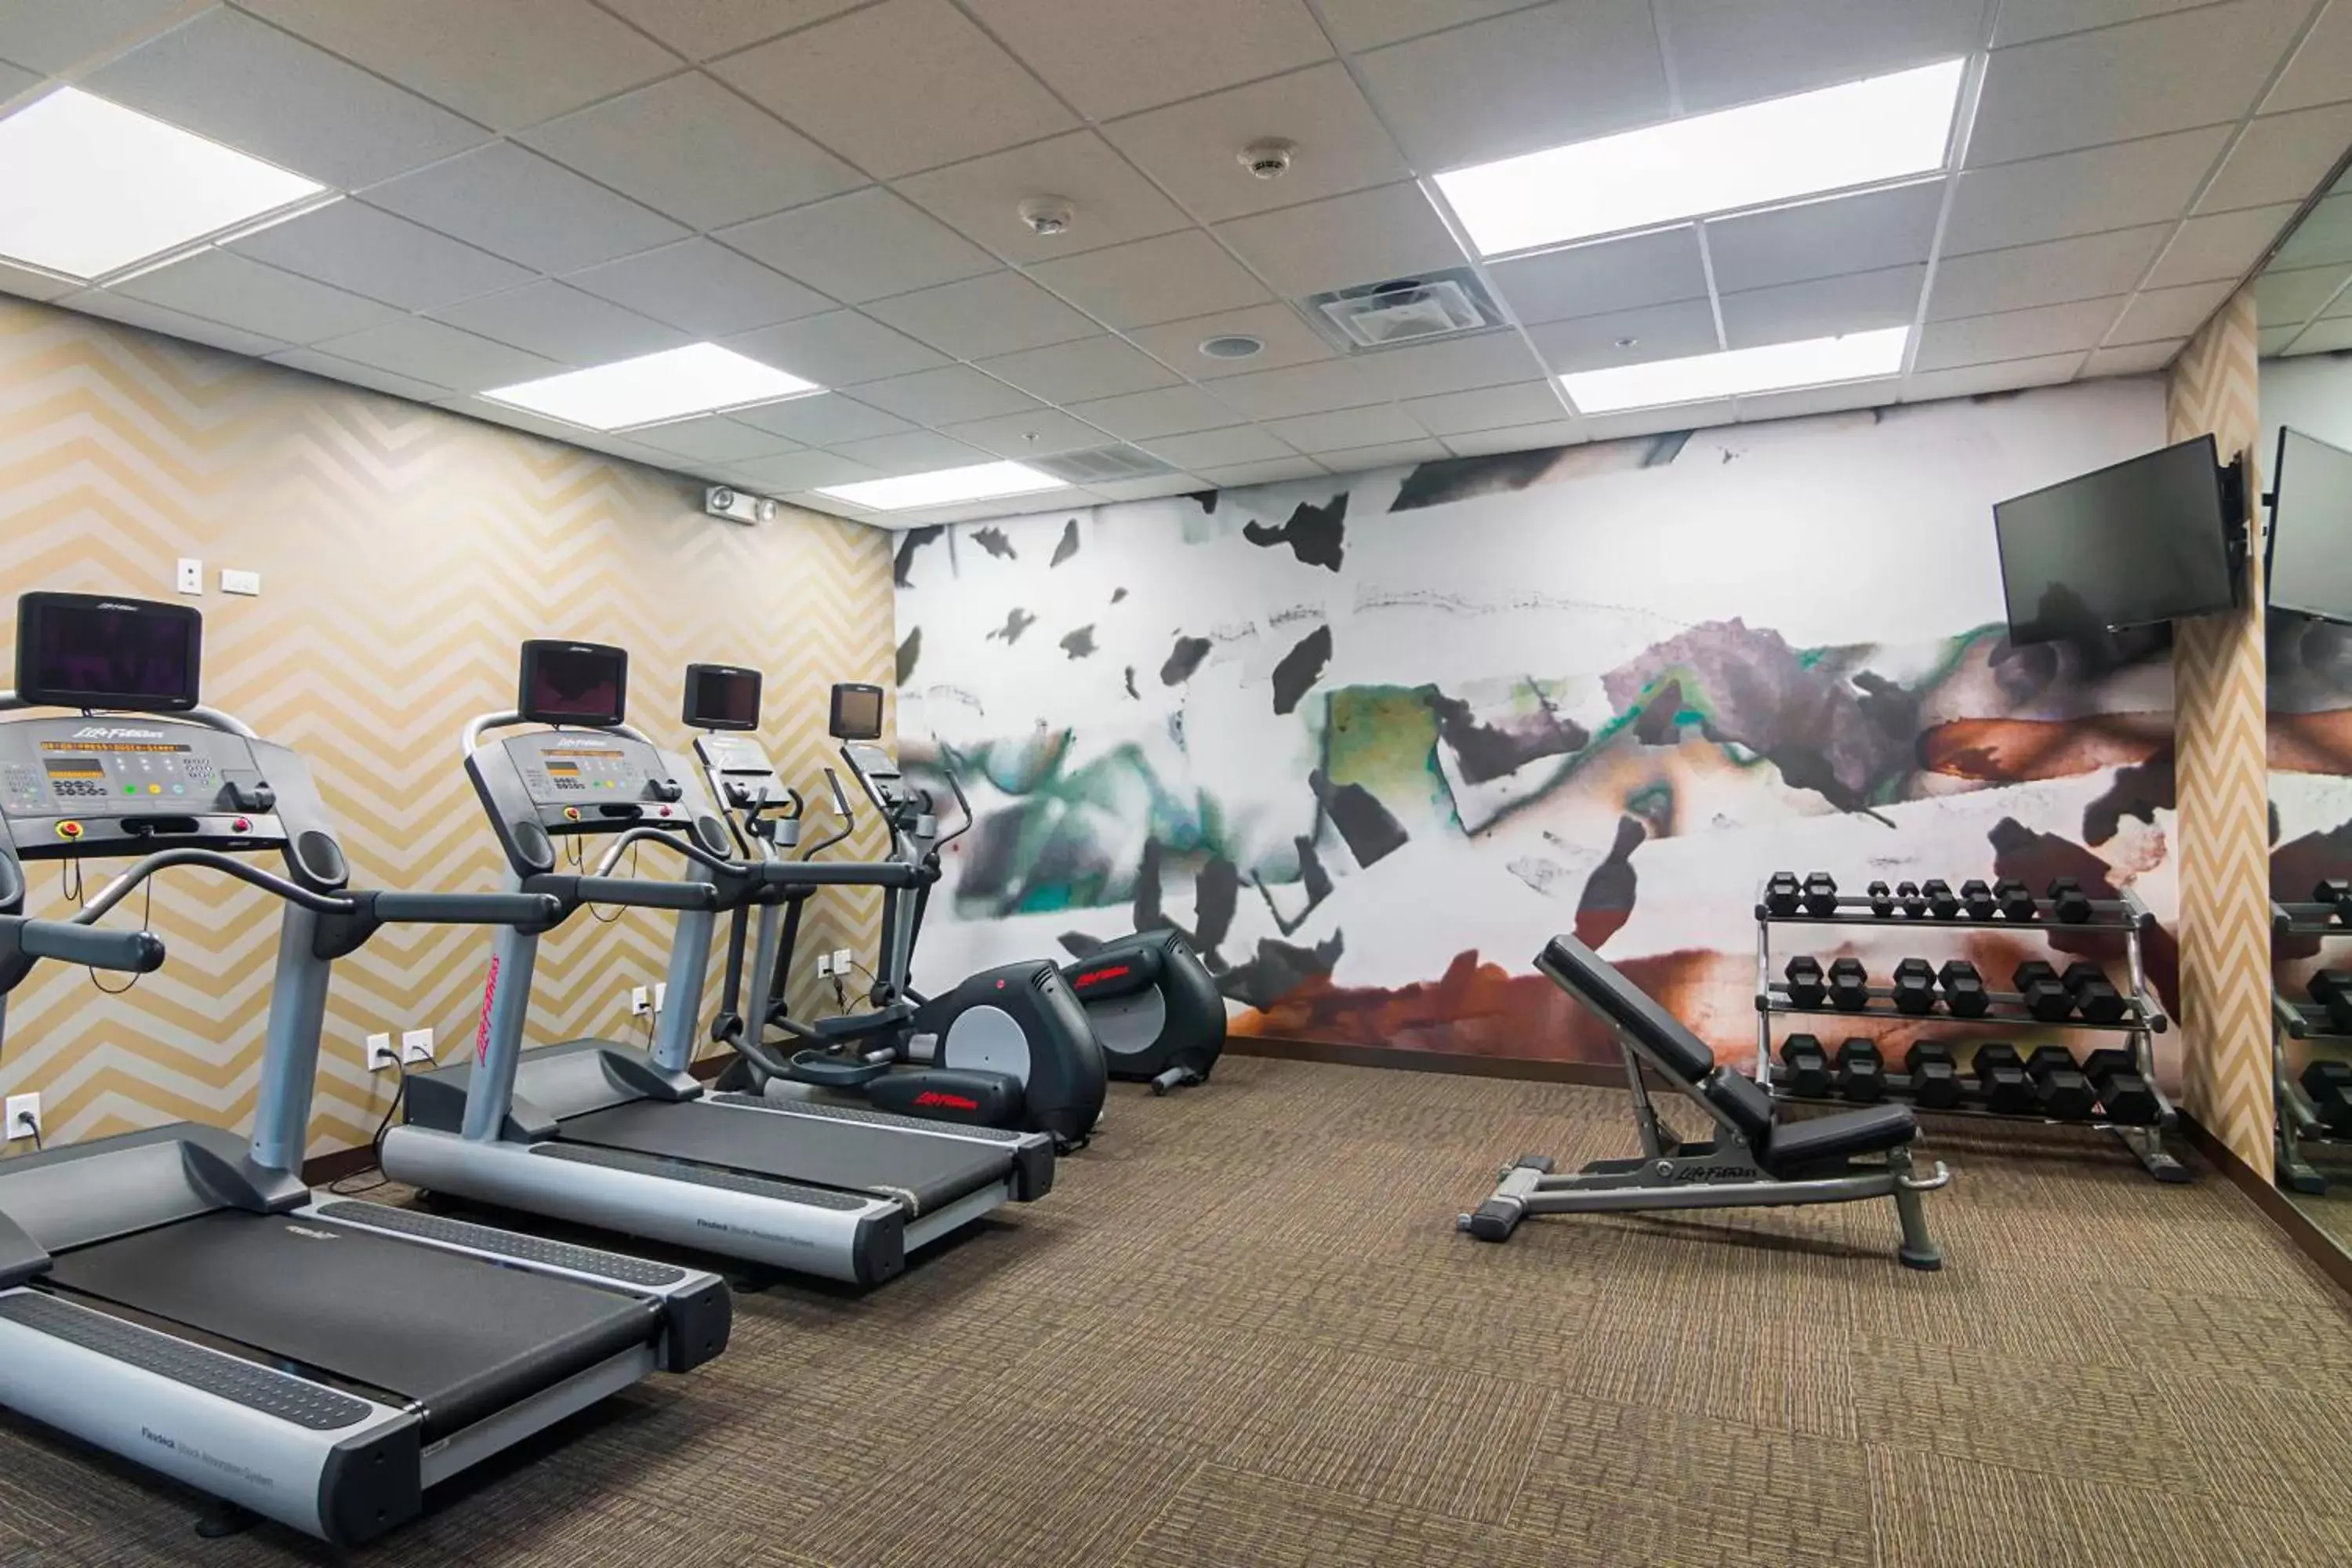 Fitness centre/facilities, Fitness Center/Facilities in Residence Inn by Marriott Denton